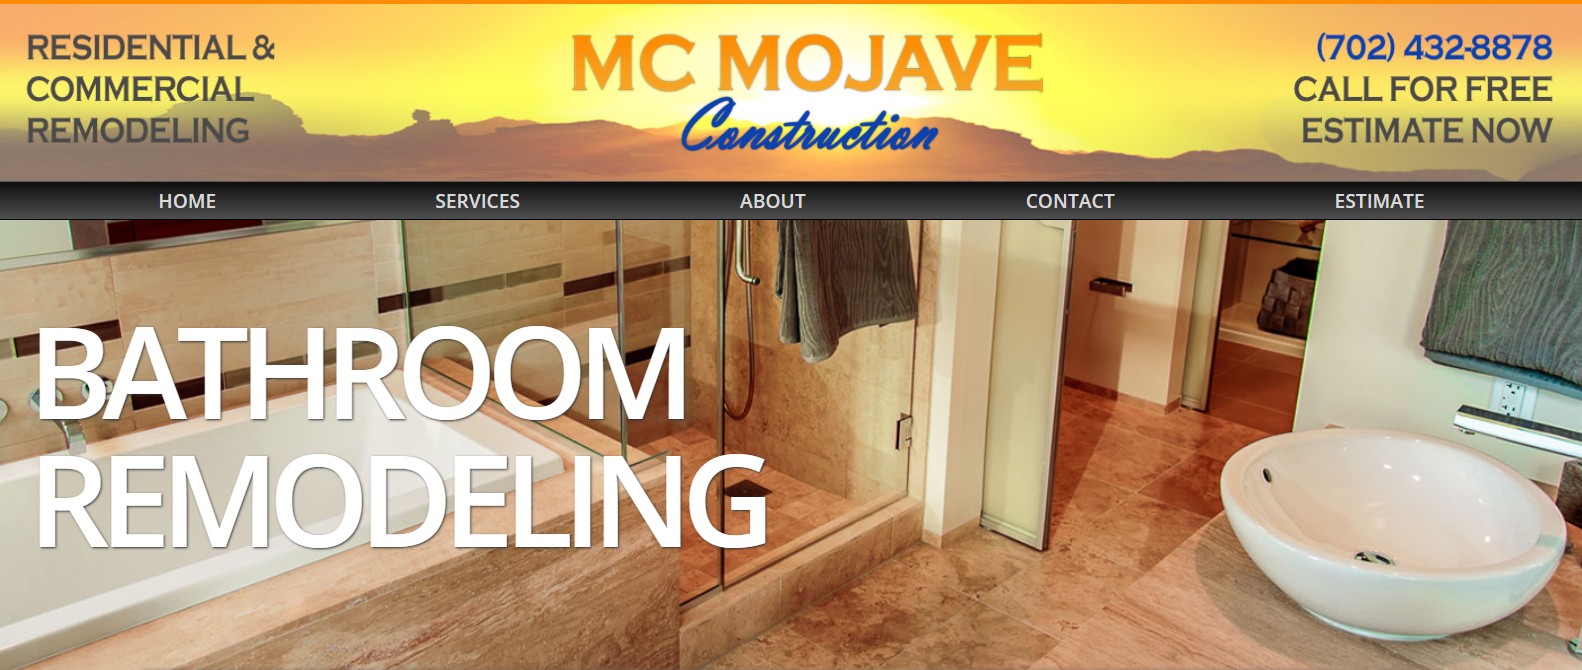 MC Mojave web design before picture